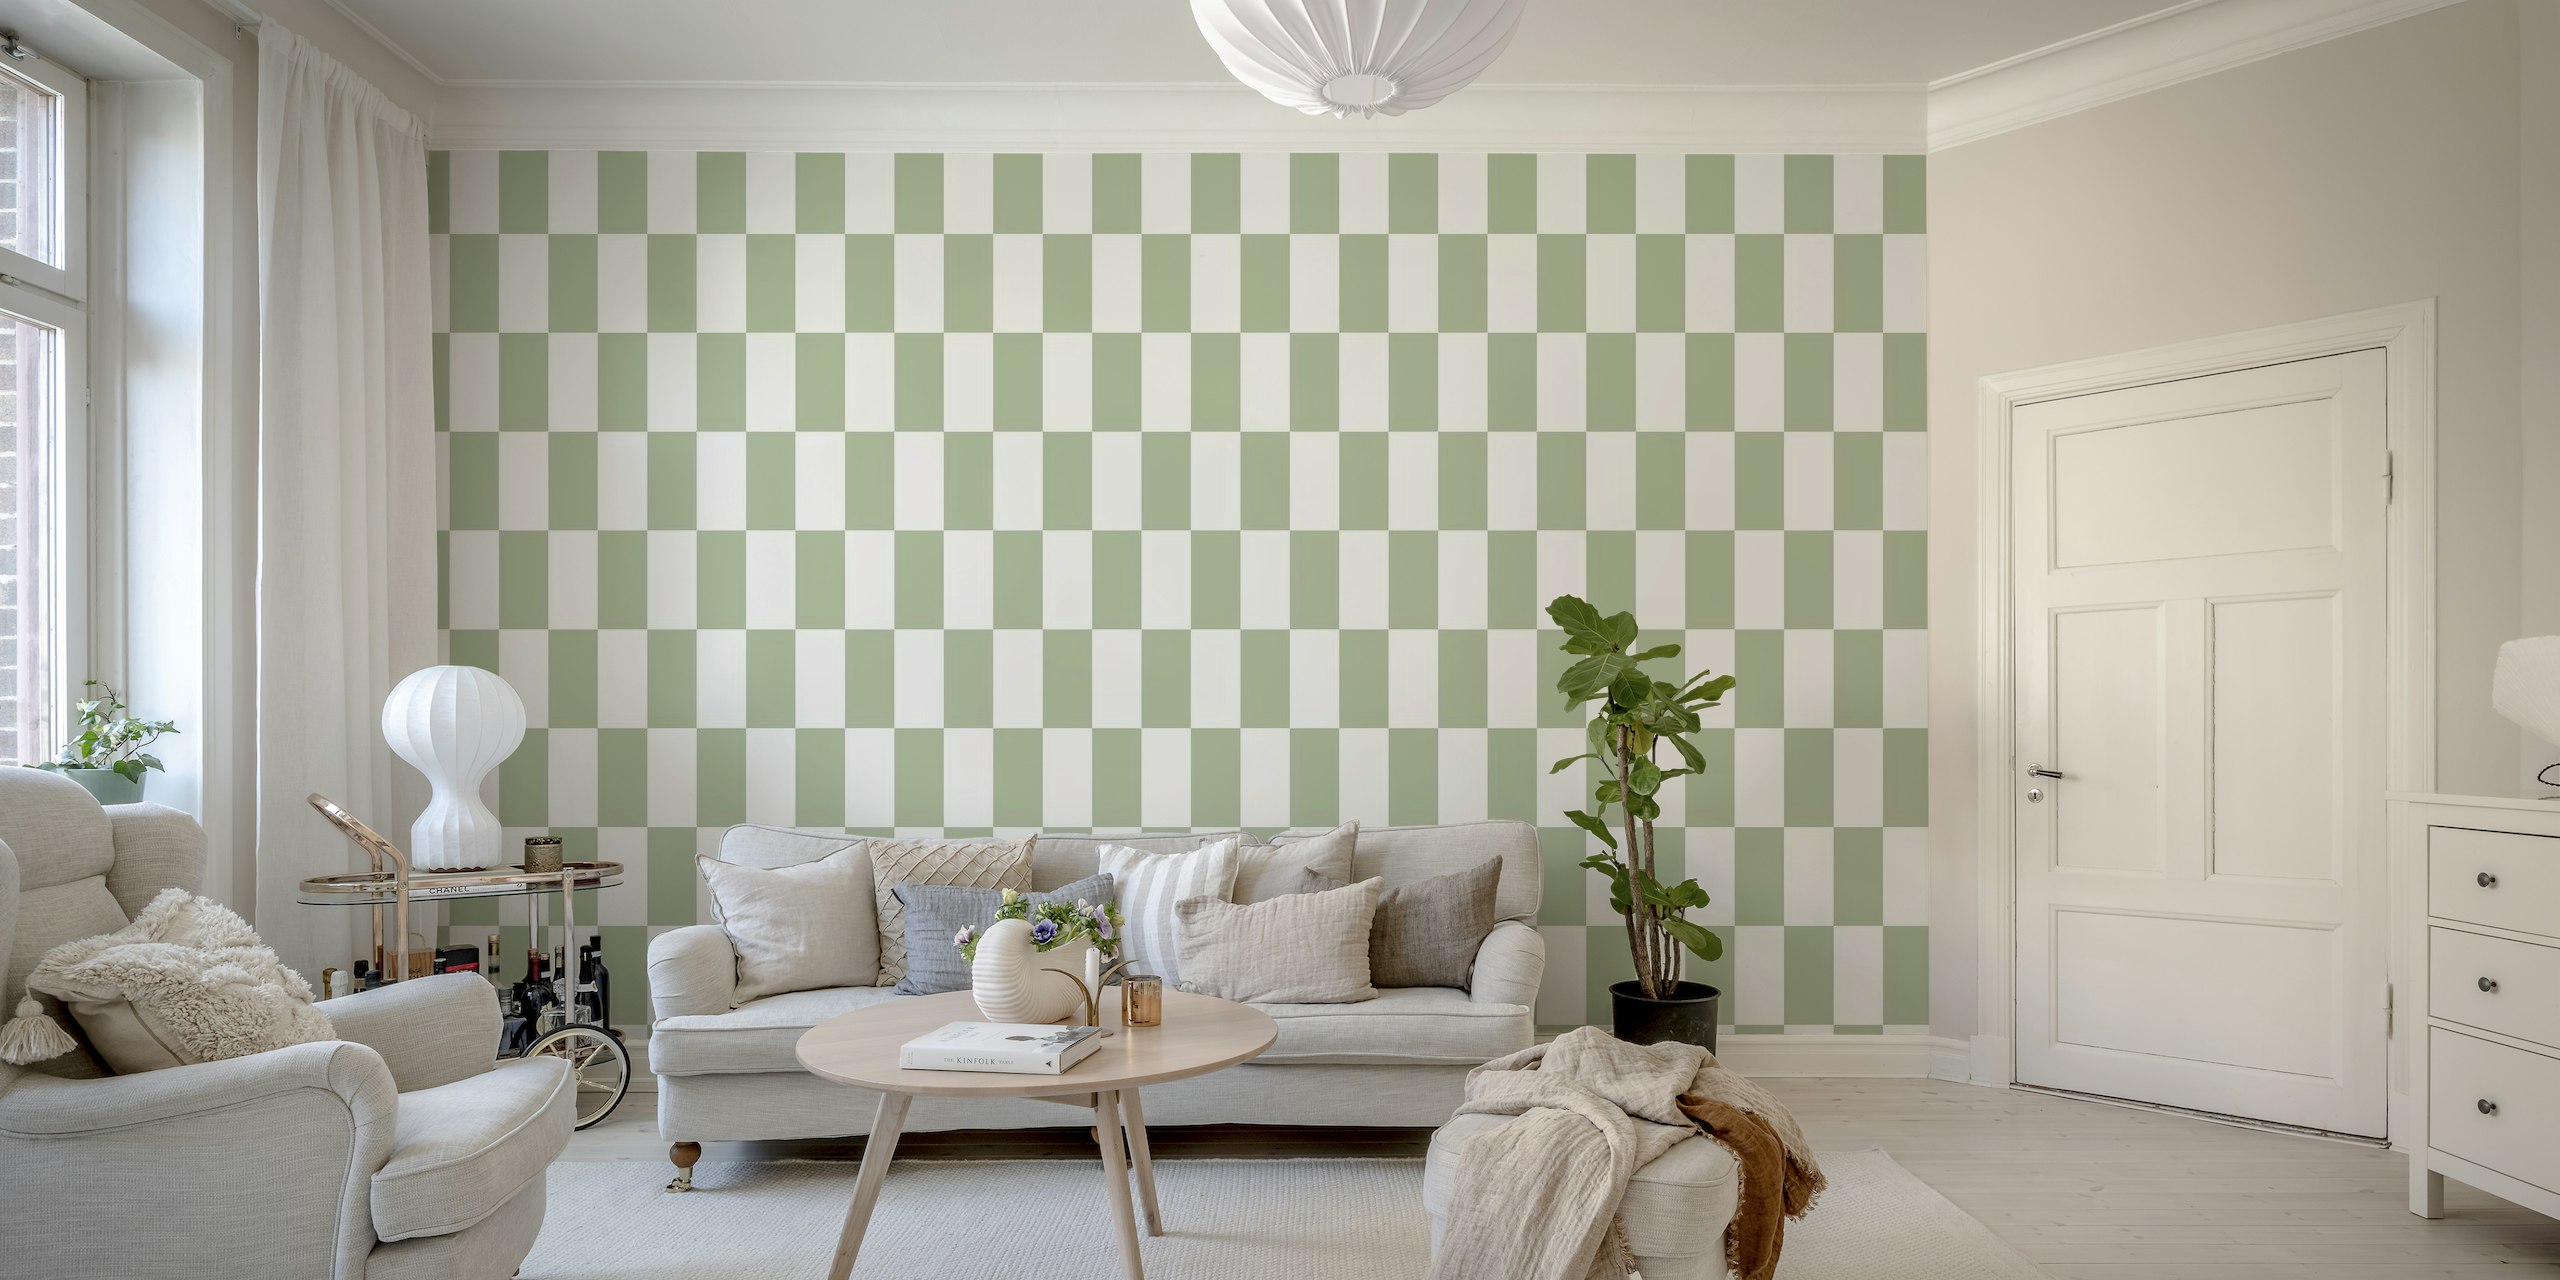 Décoration murale rectangles géométriques en vert sauge